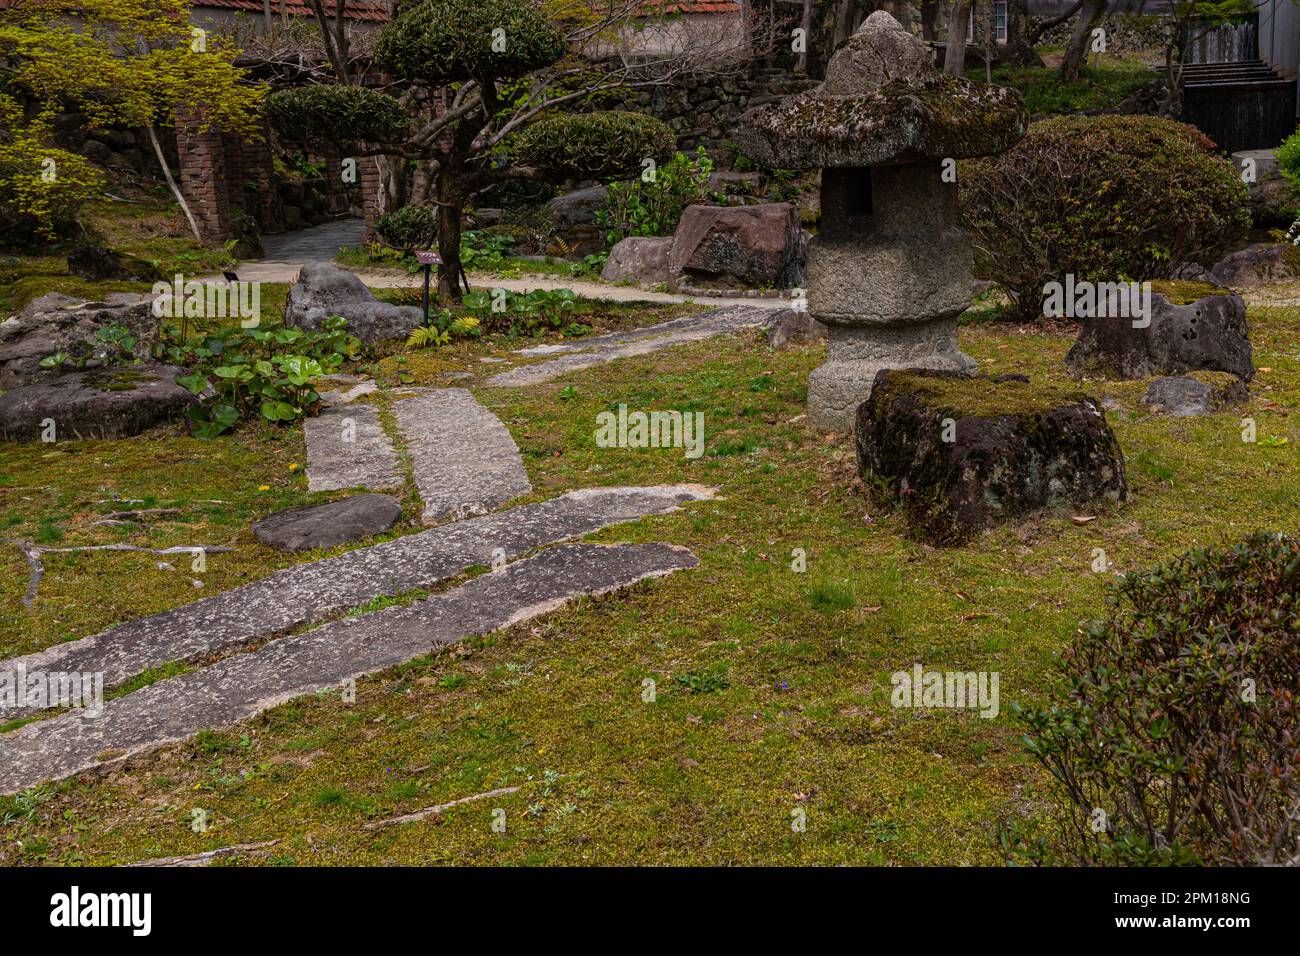 Der Oyamazaki Villa Garden ist bemerkenswert, da Shotaro Kaga selbst die Architektur und den Garten entwarf Stockfoto